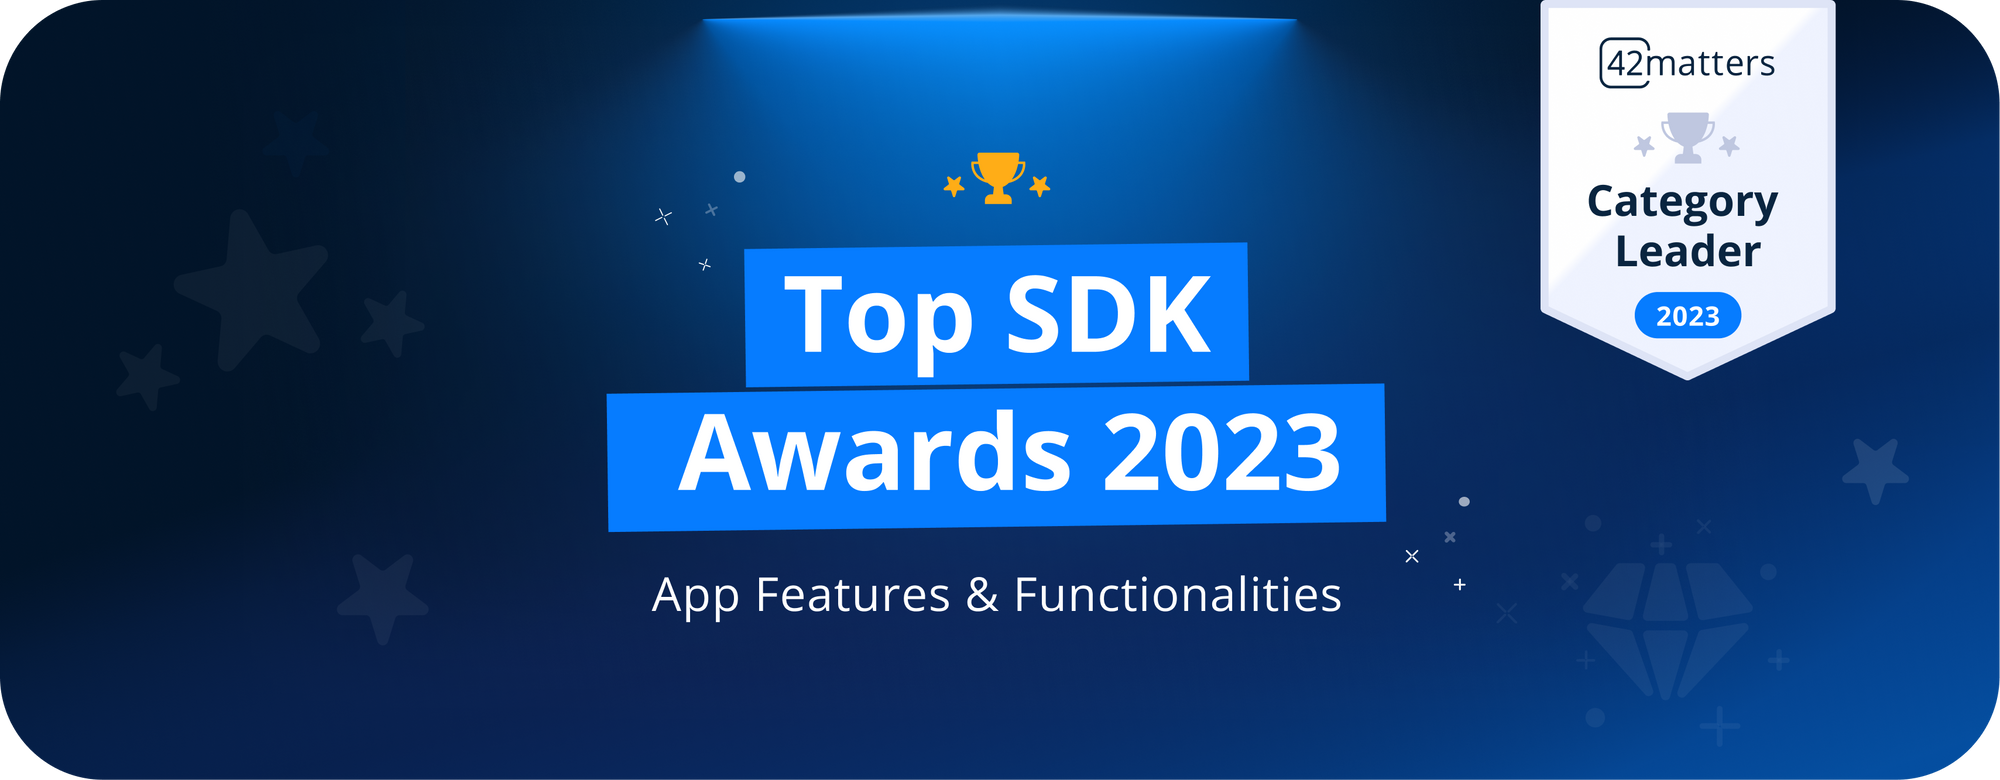 Top SDK Awards 2023: App Features & Functionalities